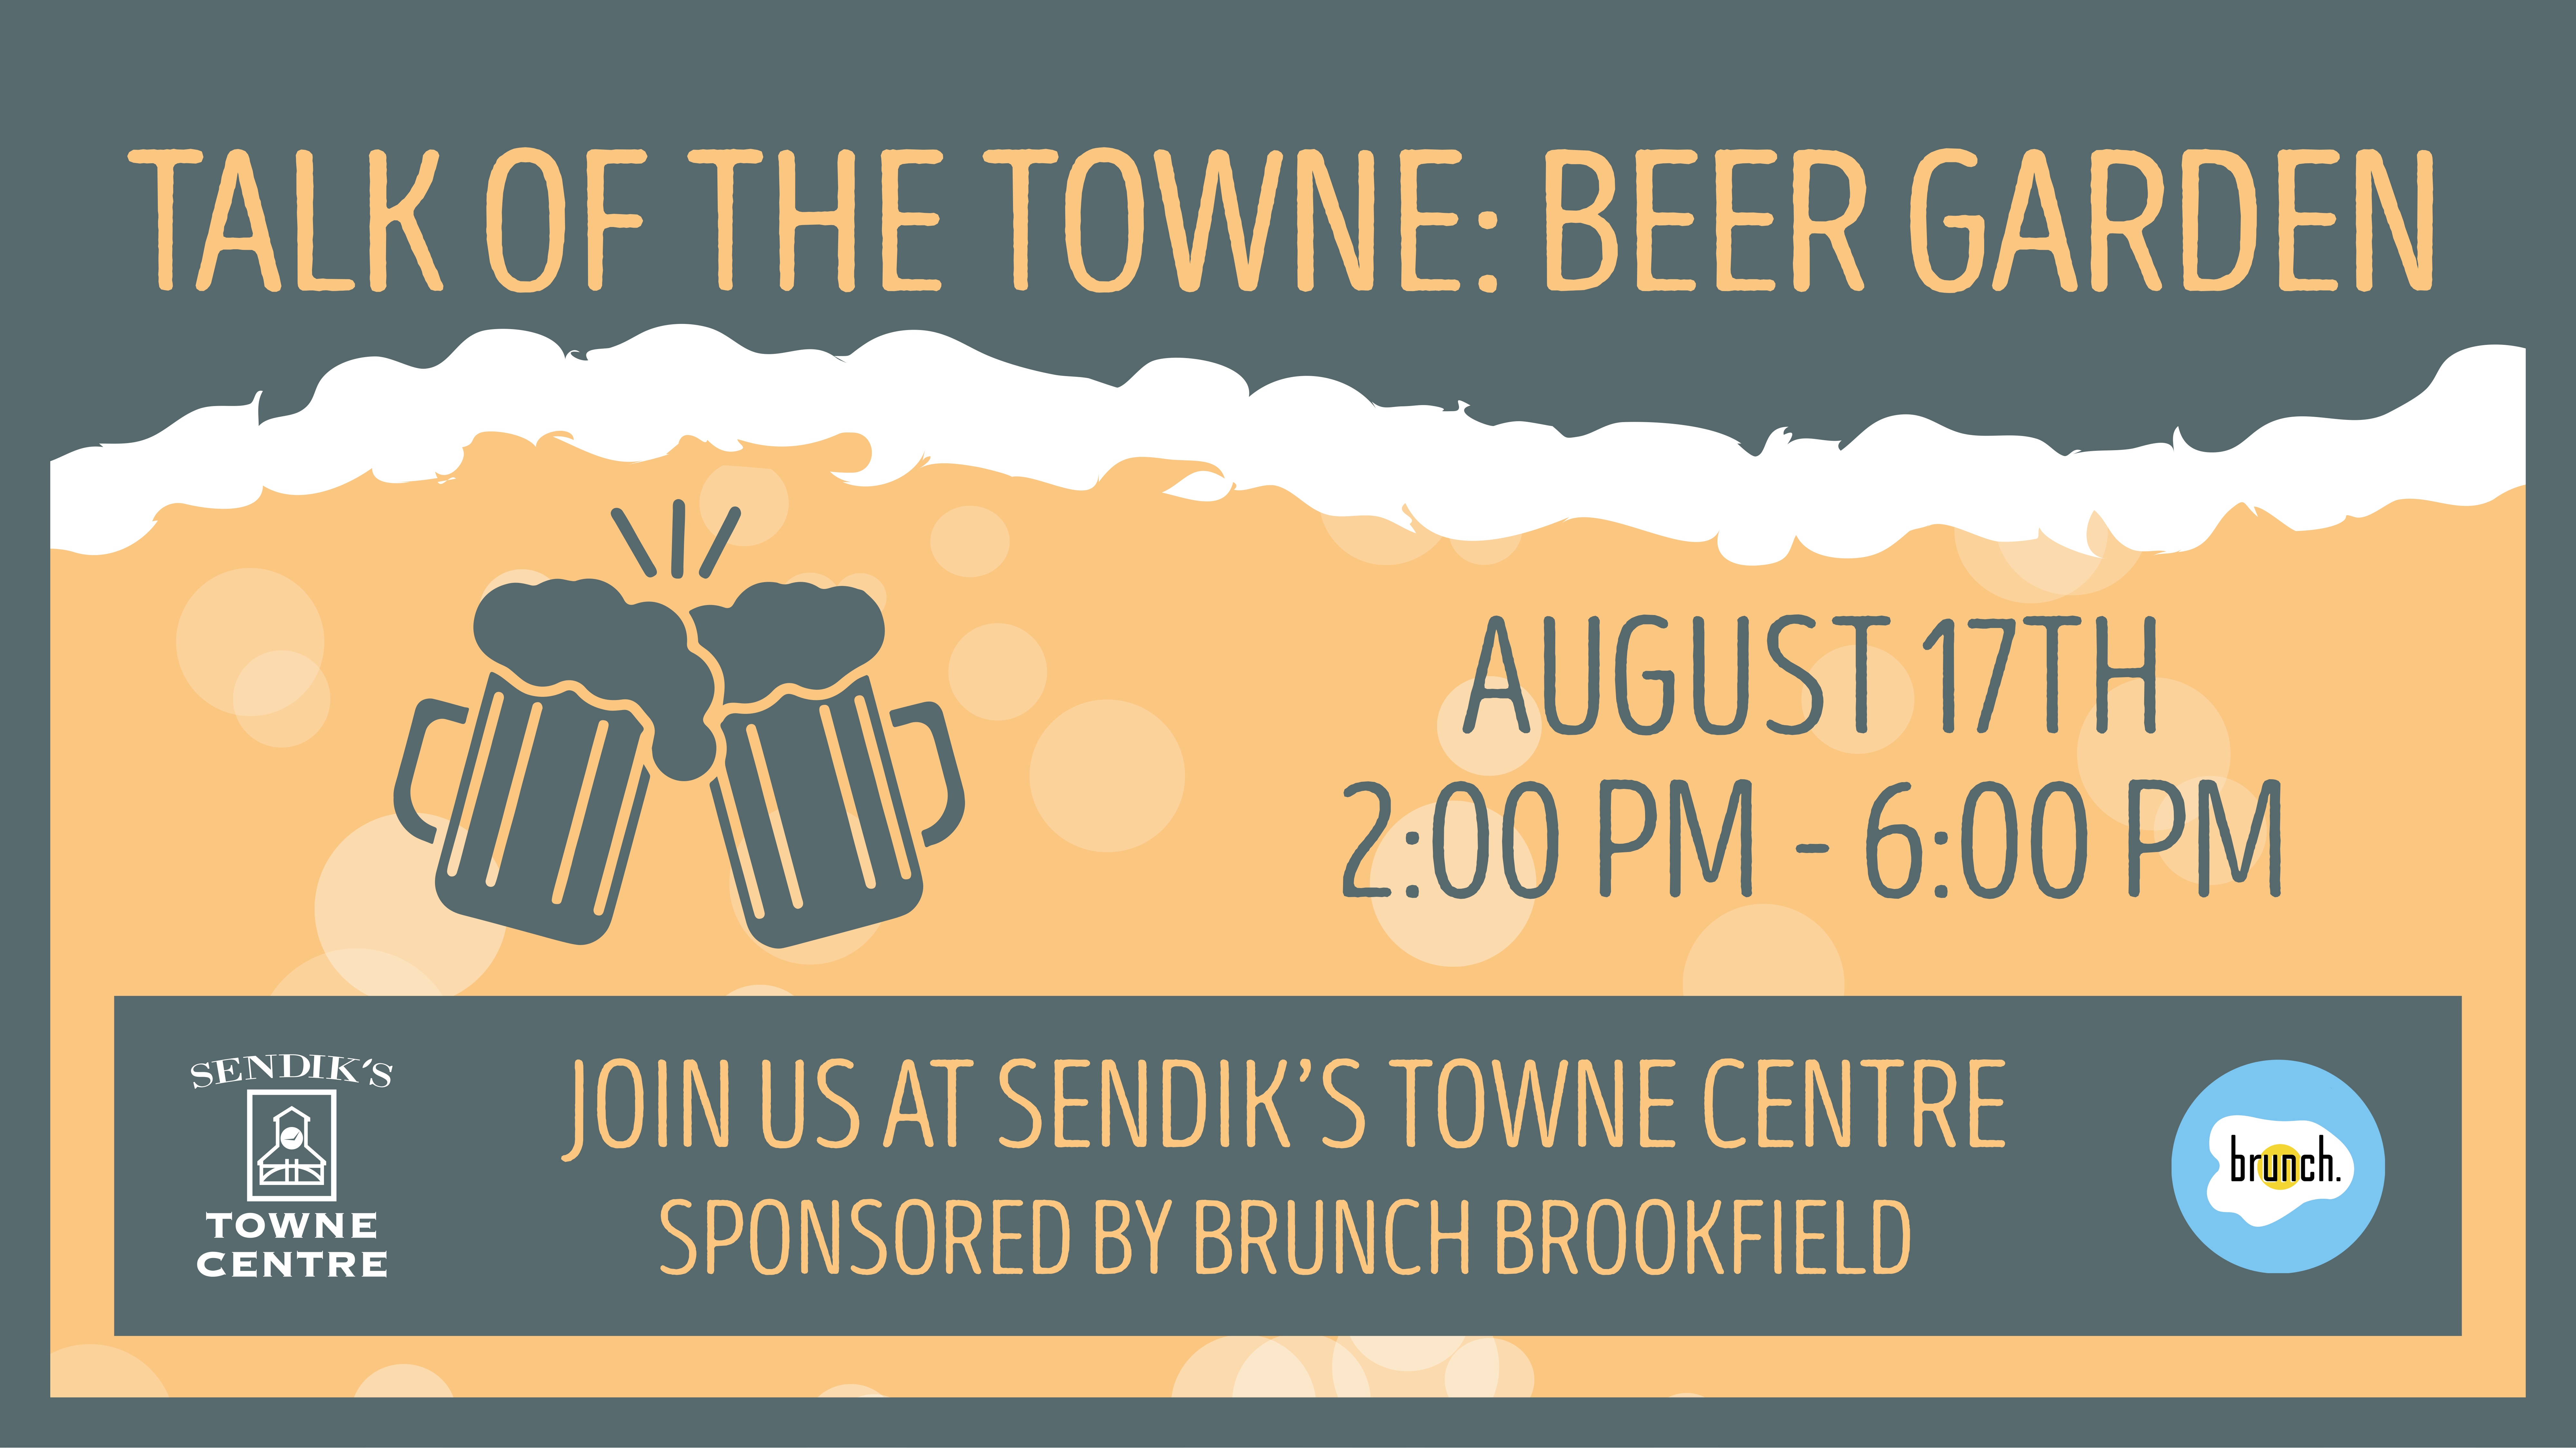 Talk of the Towne: Beer Garden